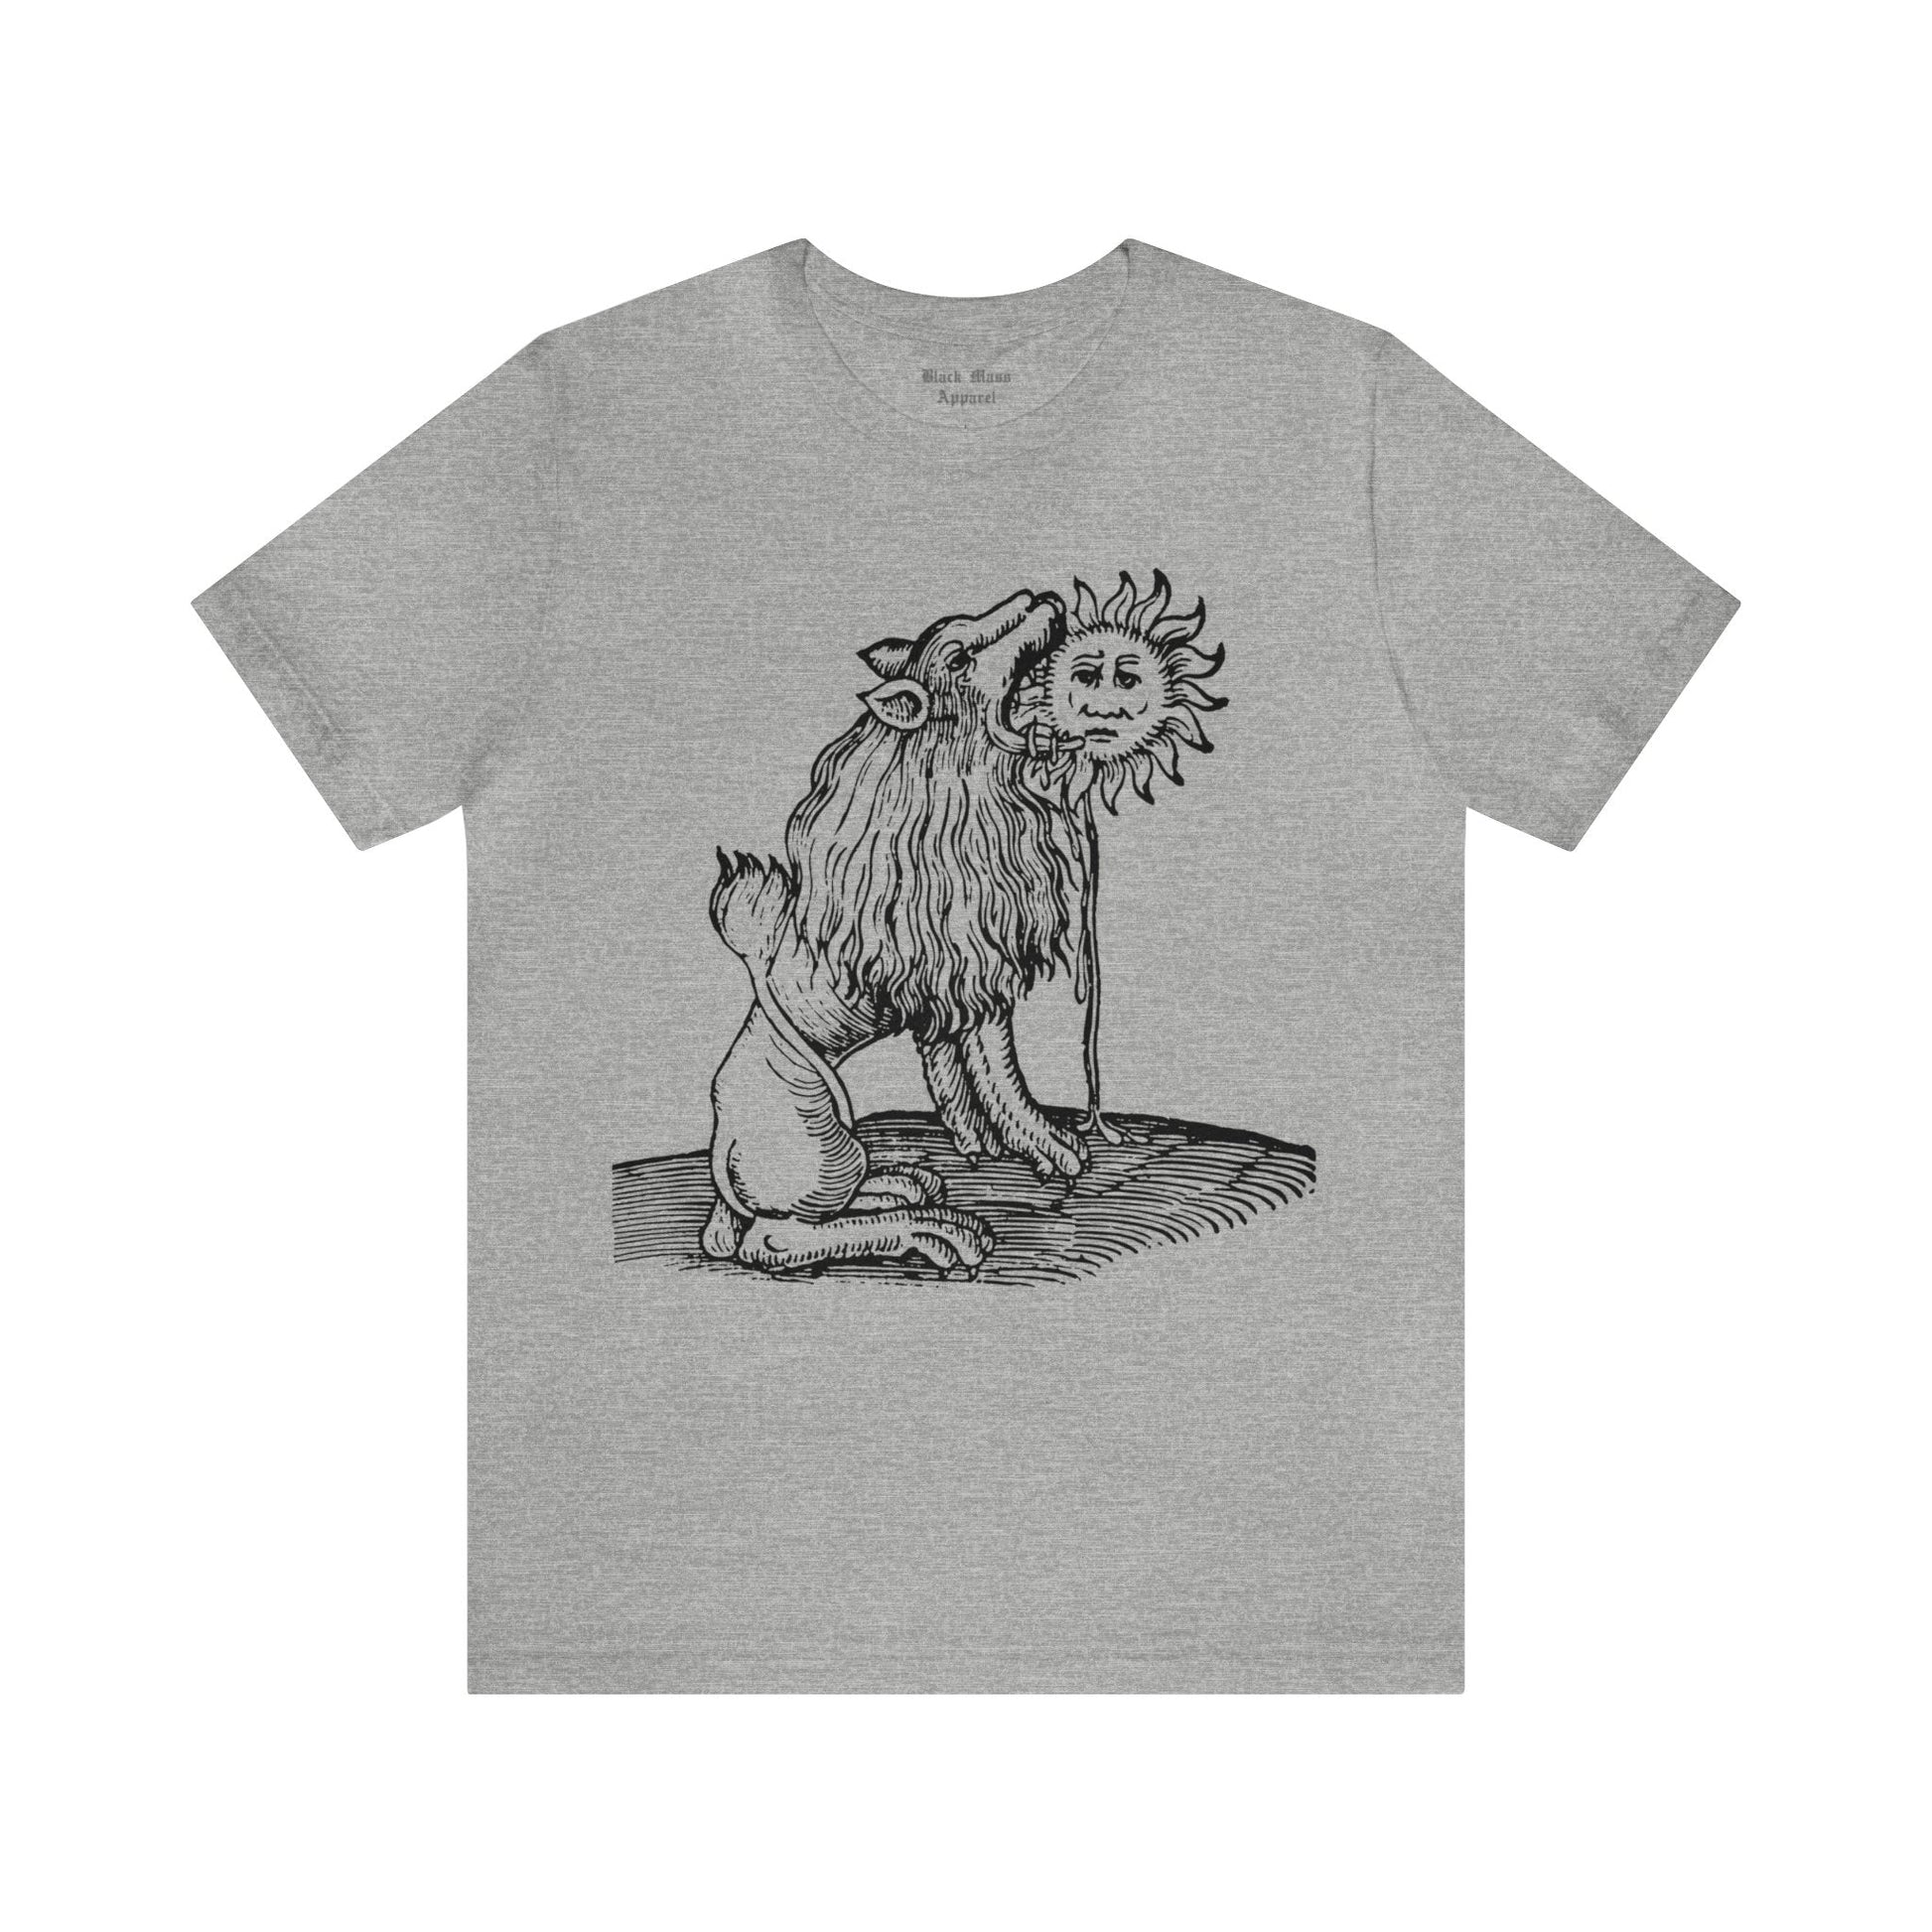 Lion Devouring the Sun - Black Mass Apparel - T-Shirt